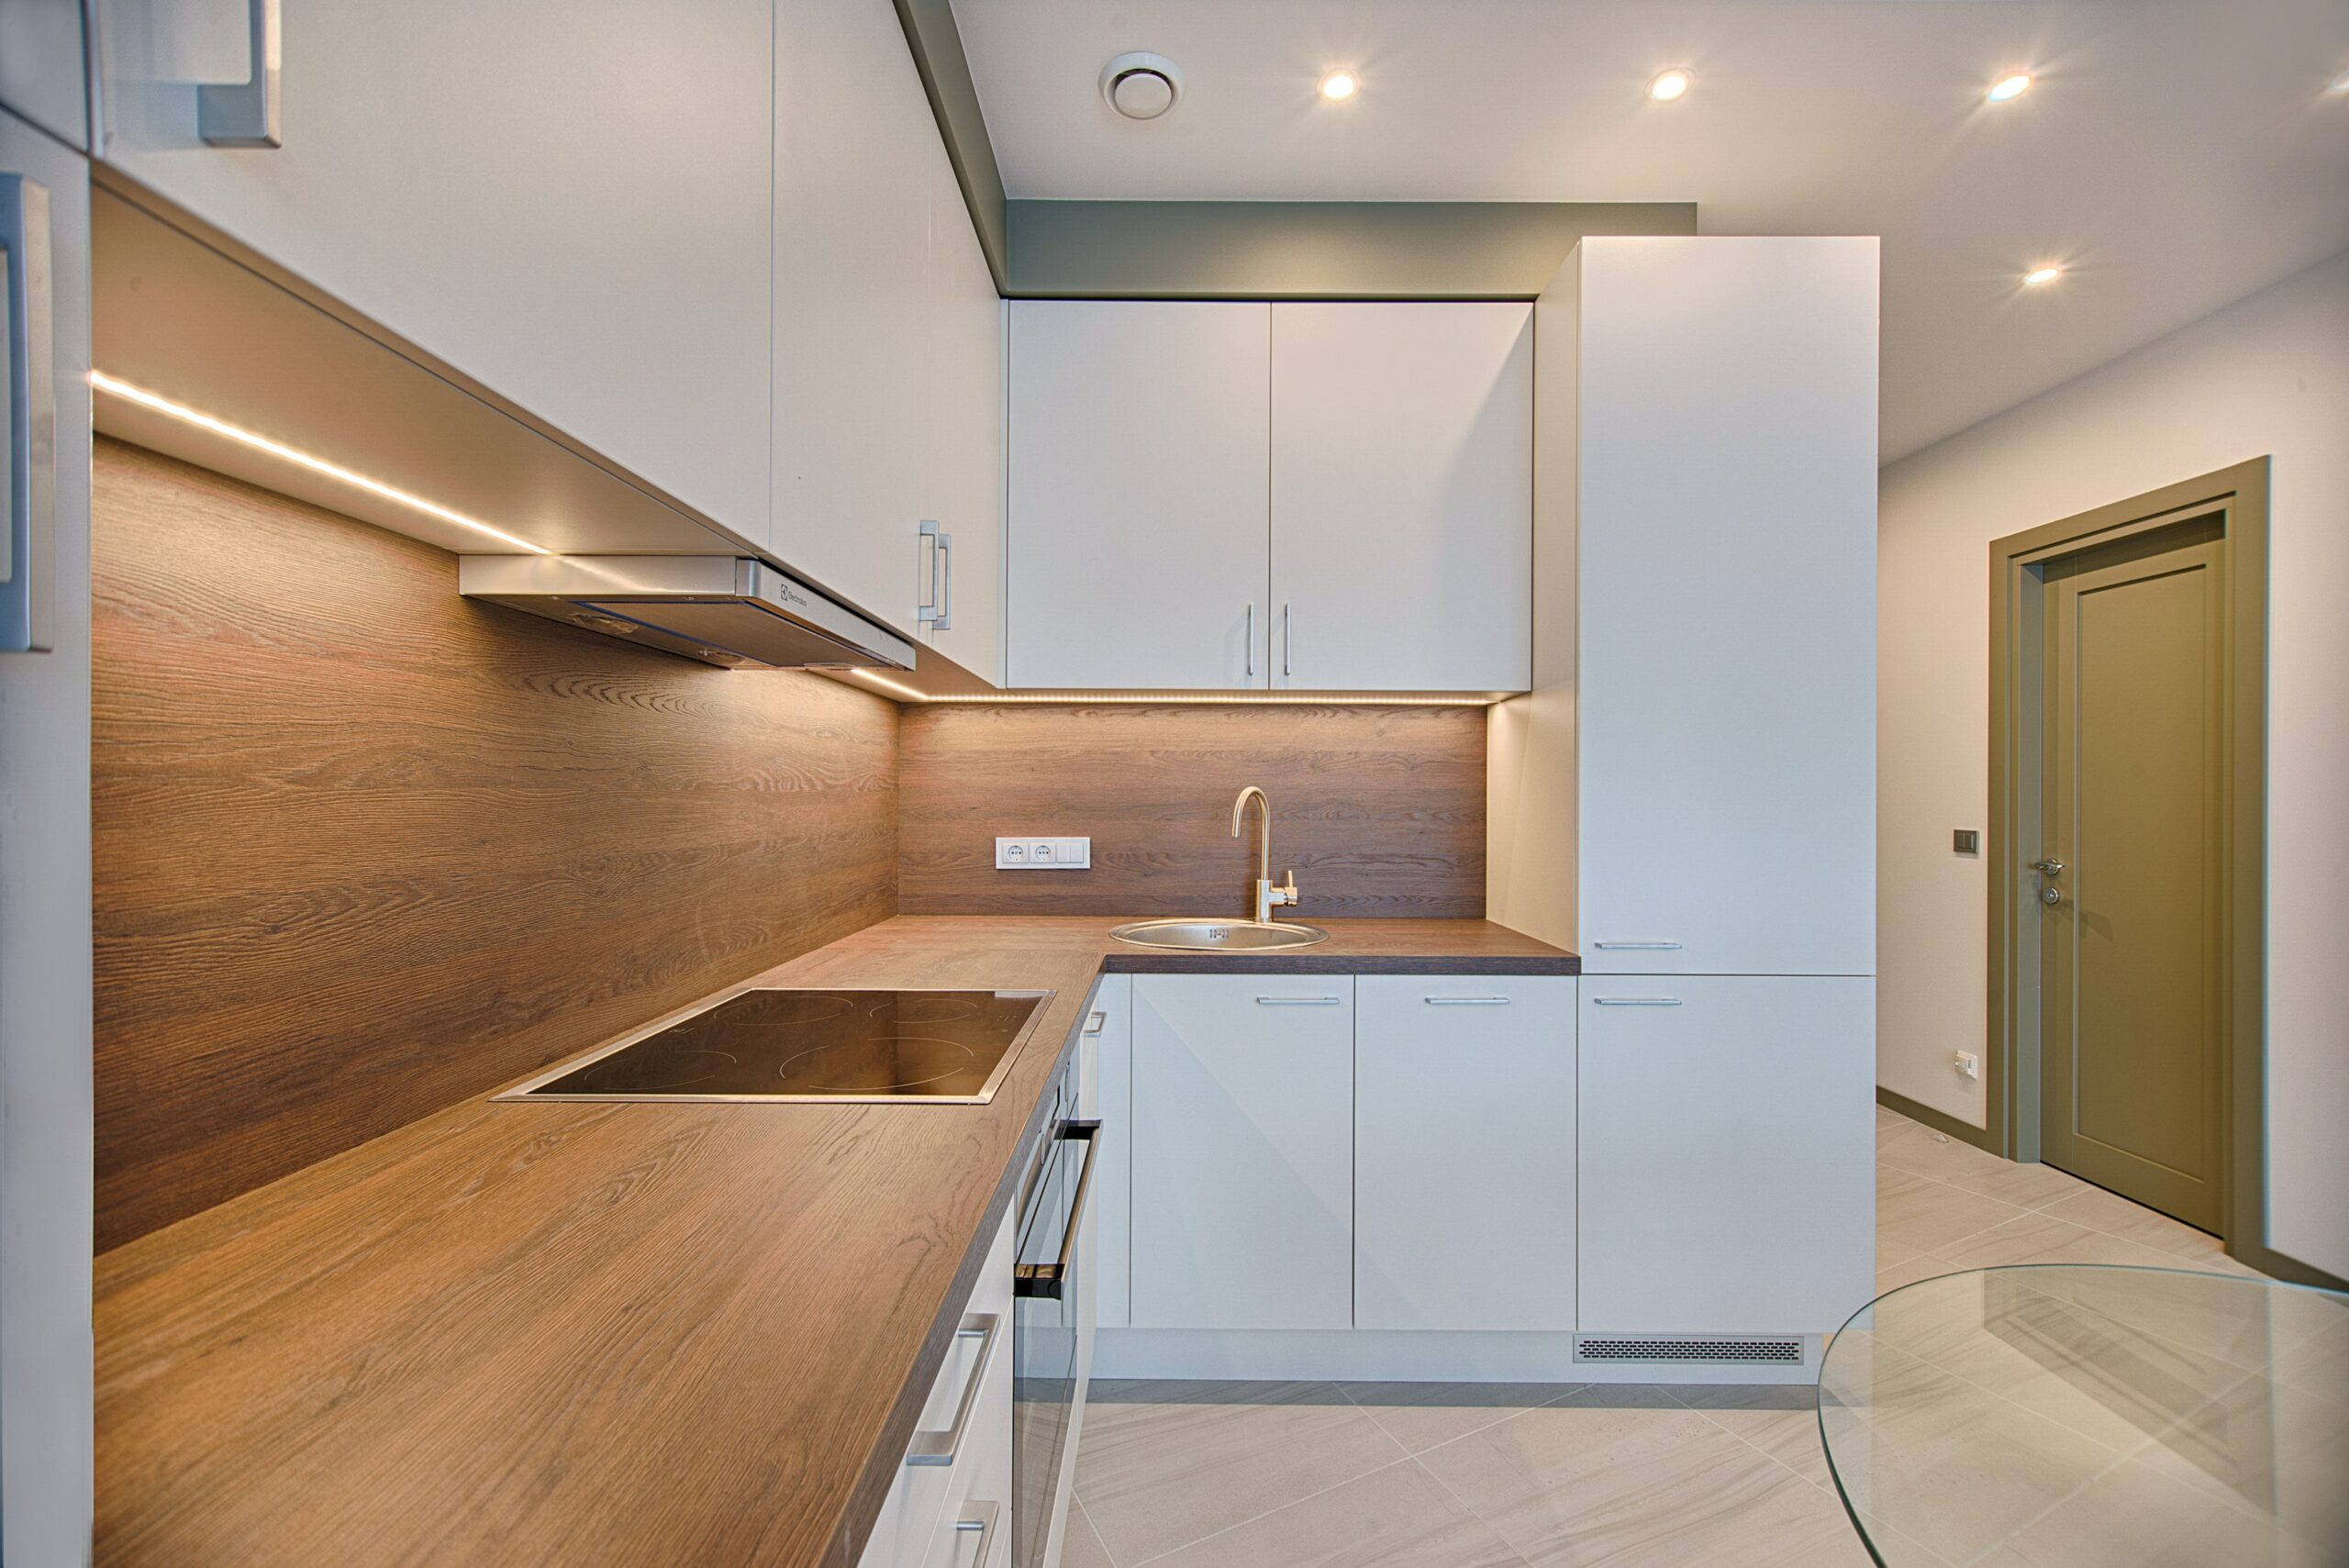 iot domus italia domotica interior design smart home